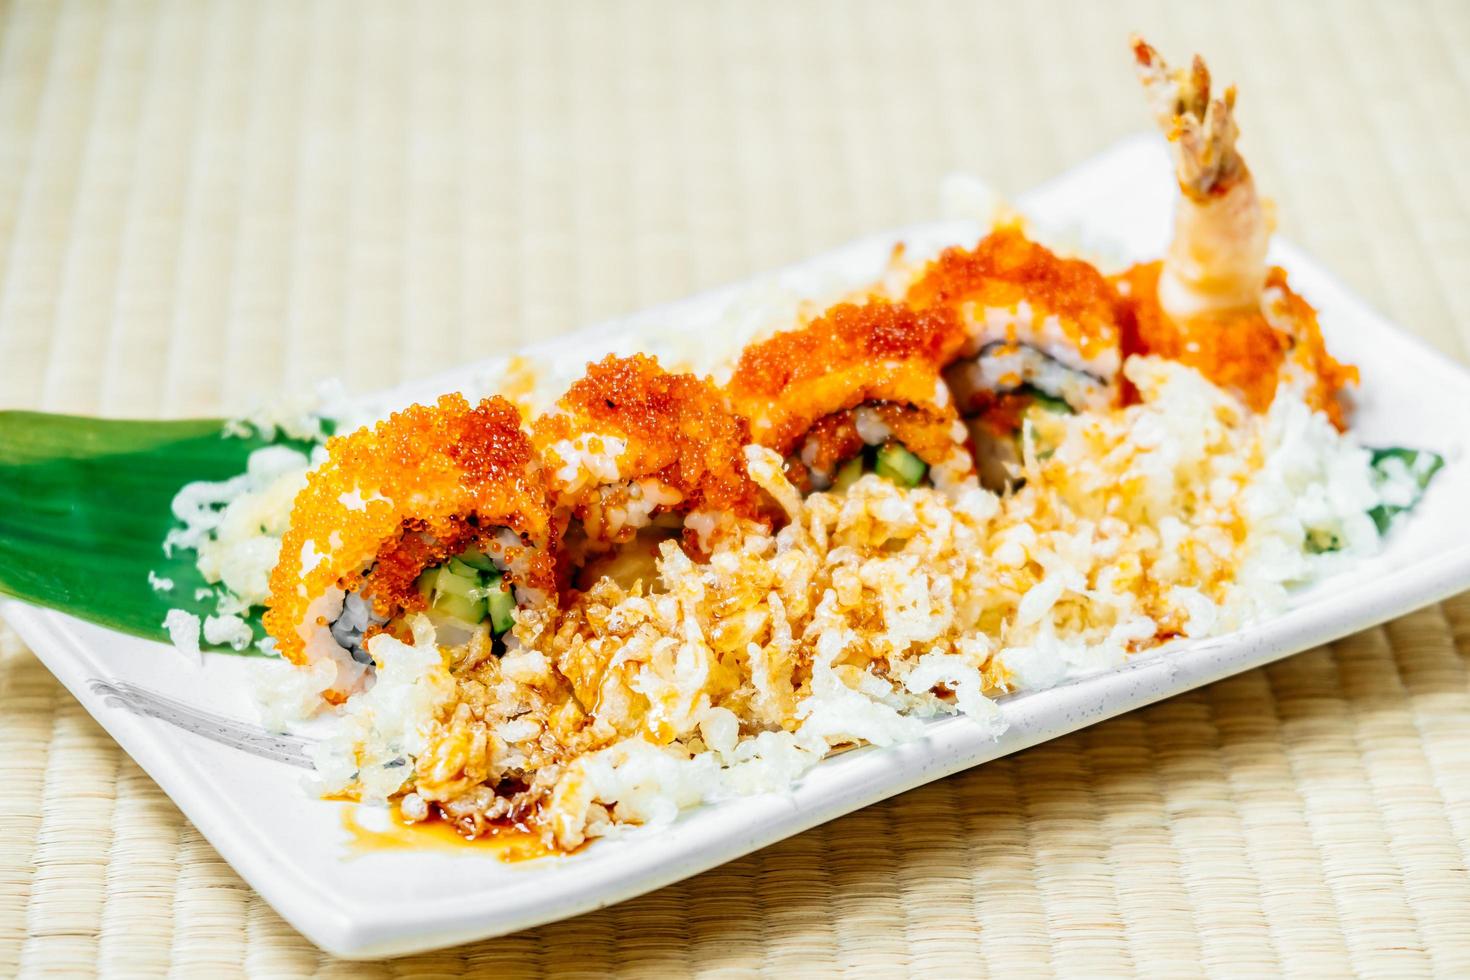 Fried shrimp or prawn tempura sushi photo